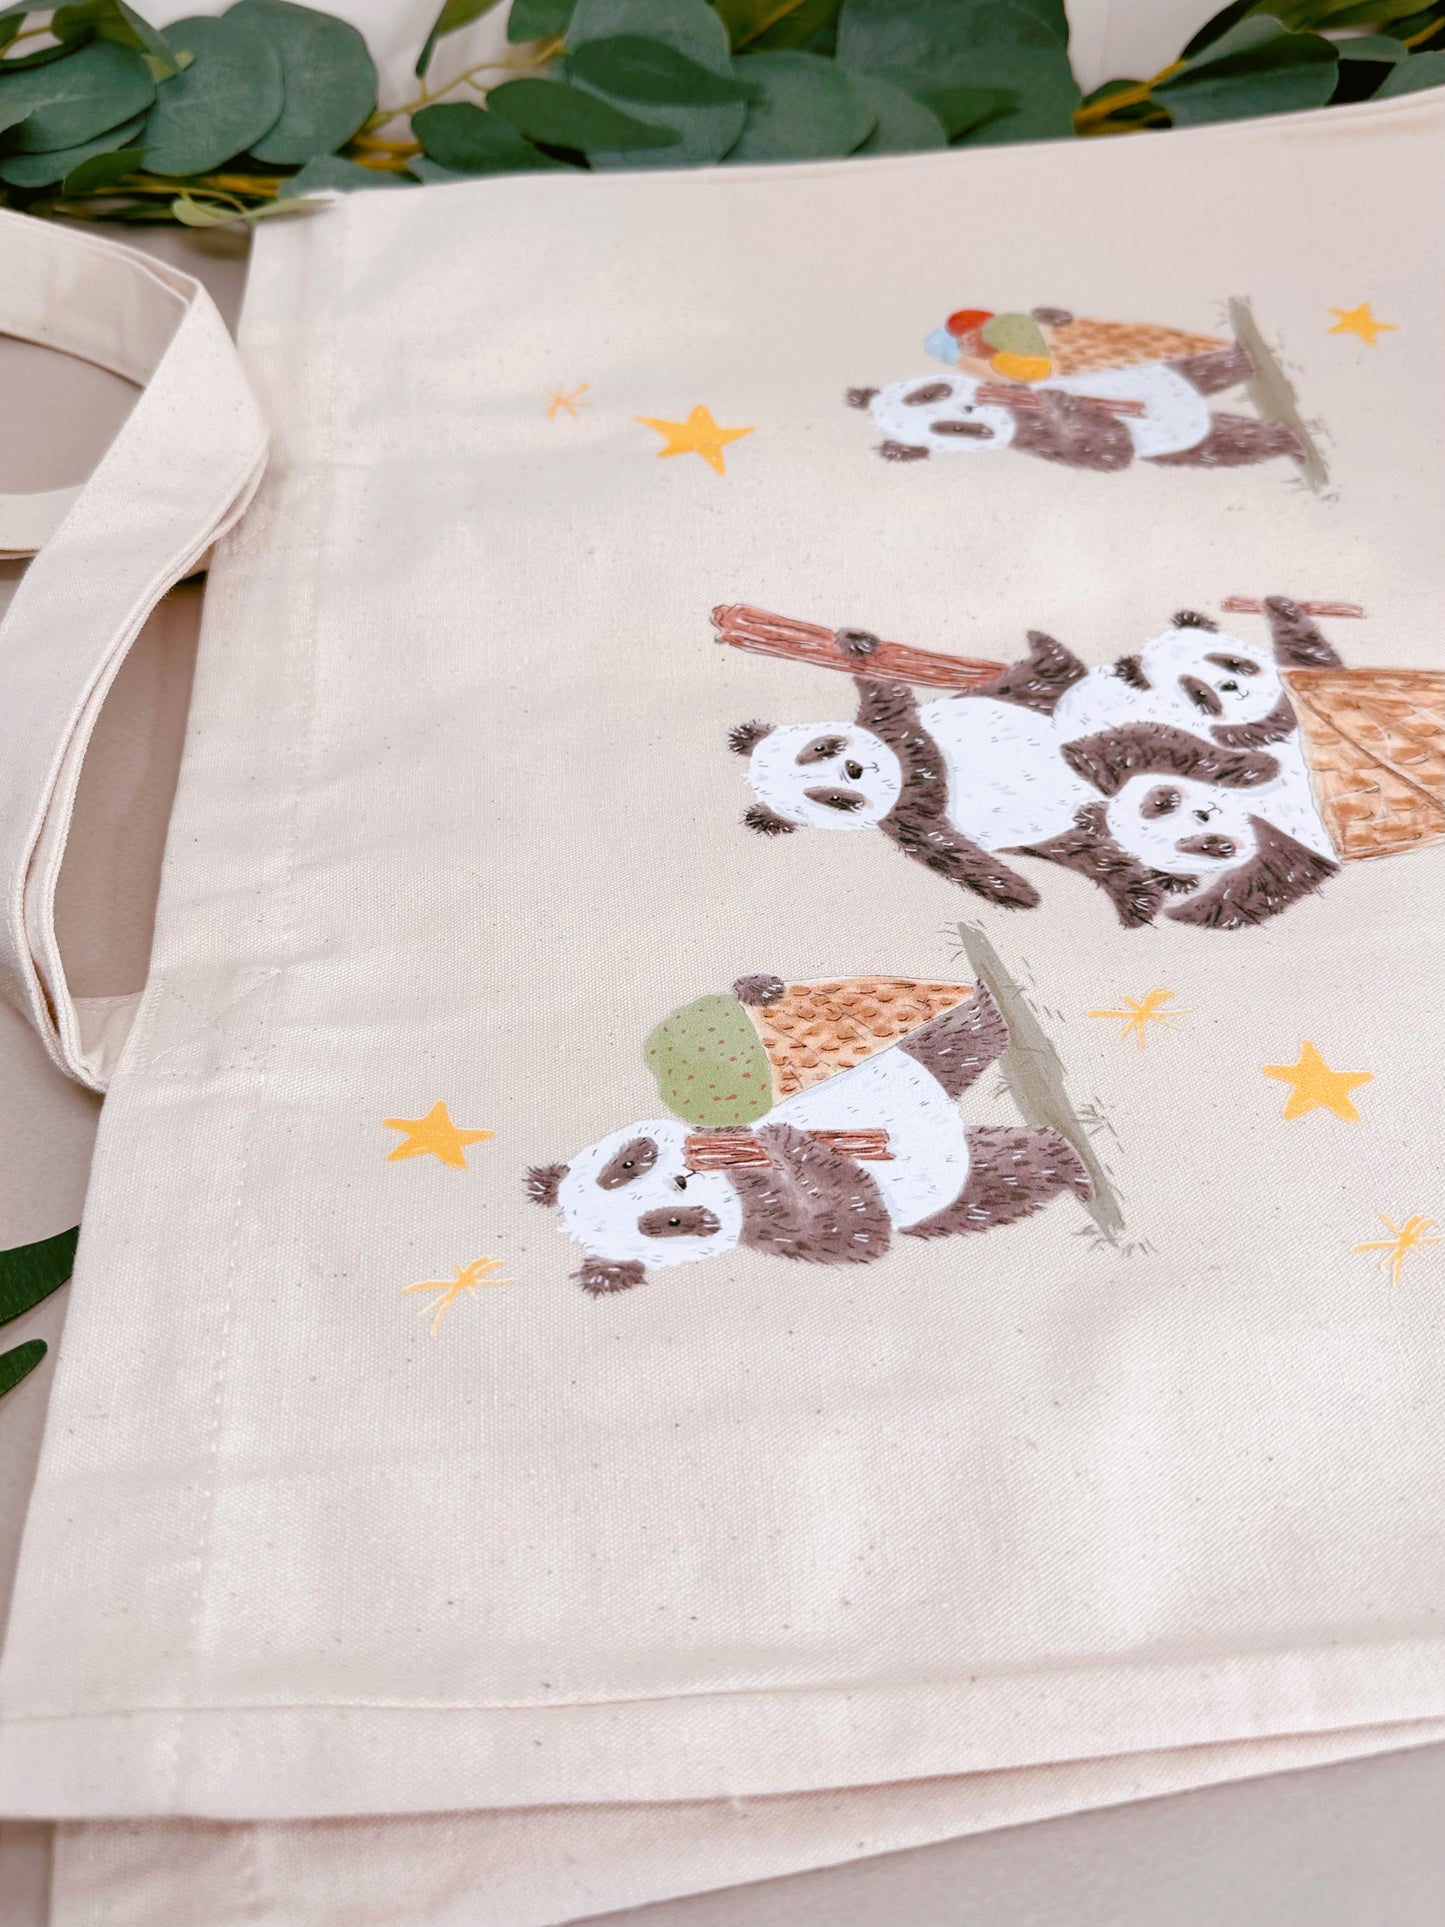 Panda Ice Cream Giant Tote Bag